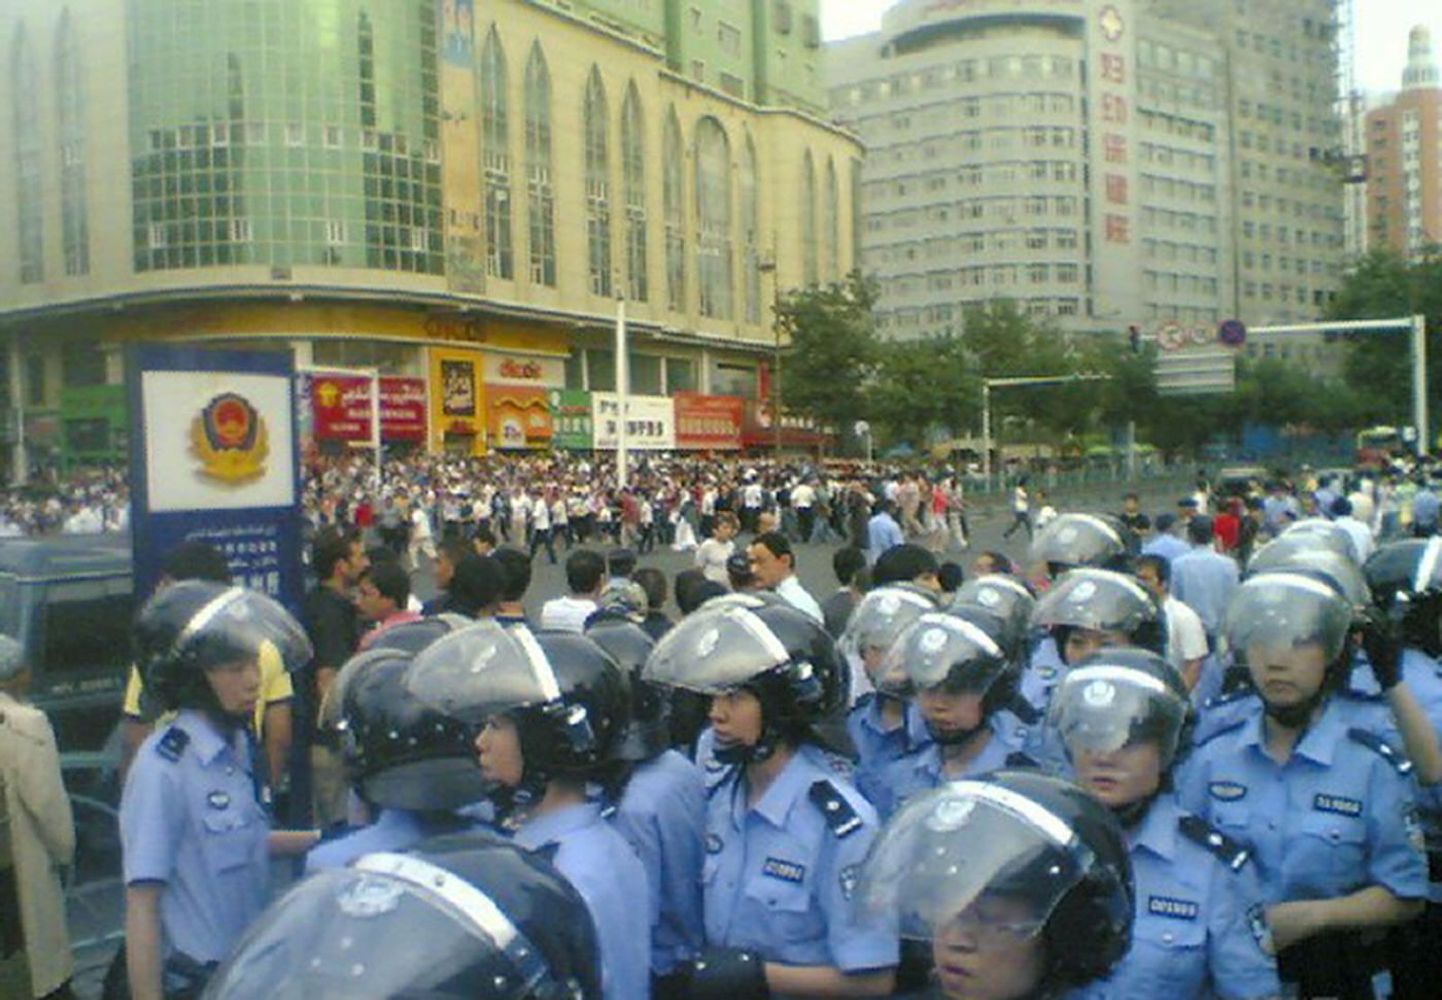 Politsei uiguuride meeleavalduste ajal.